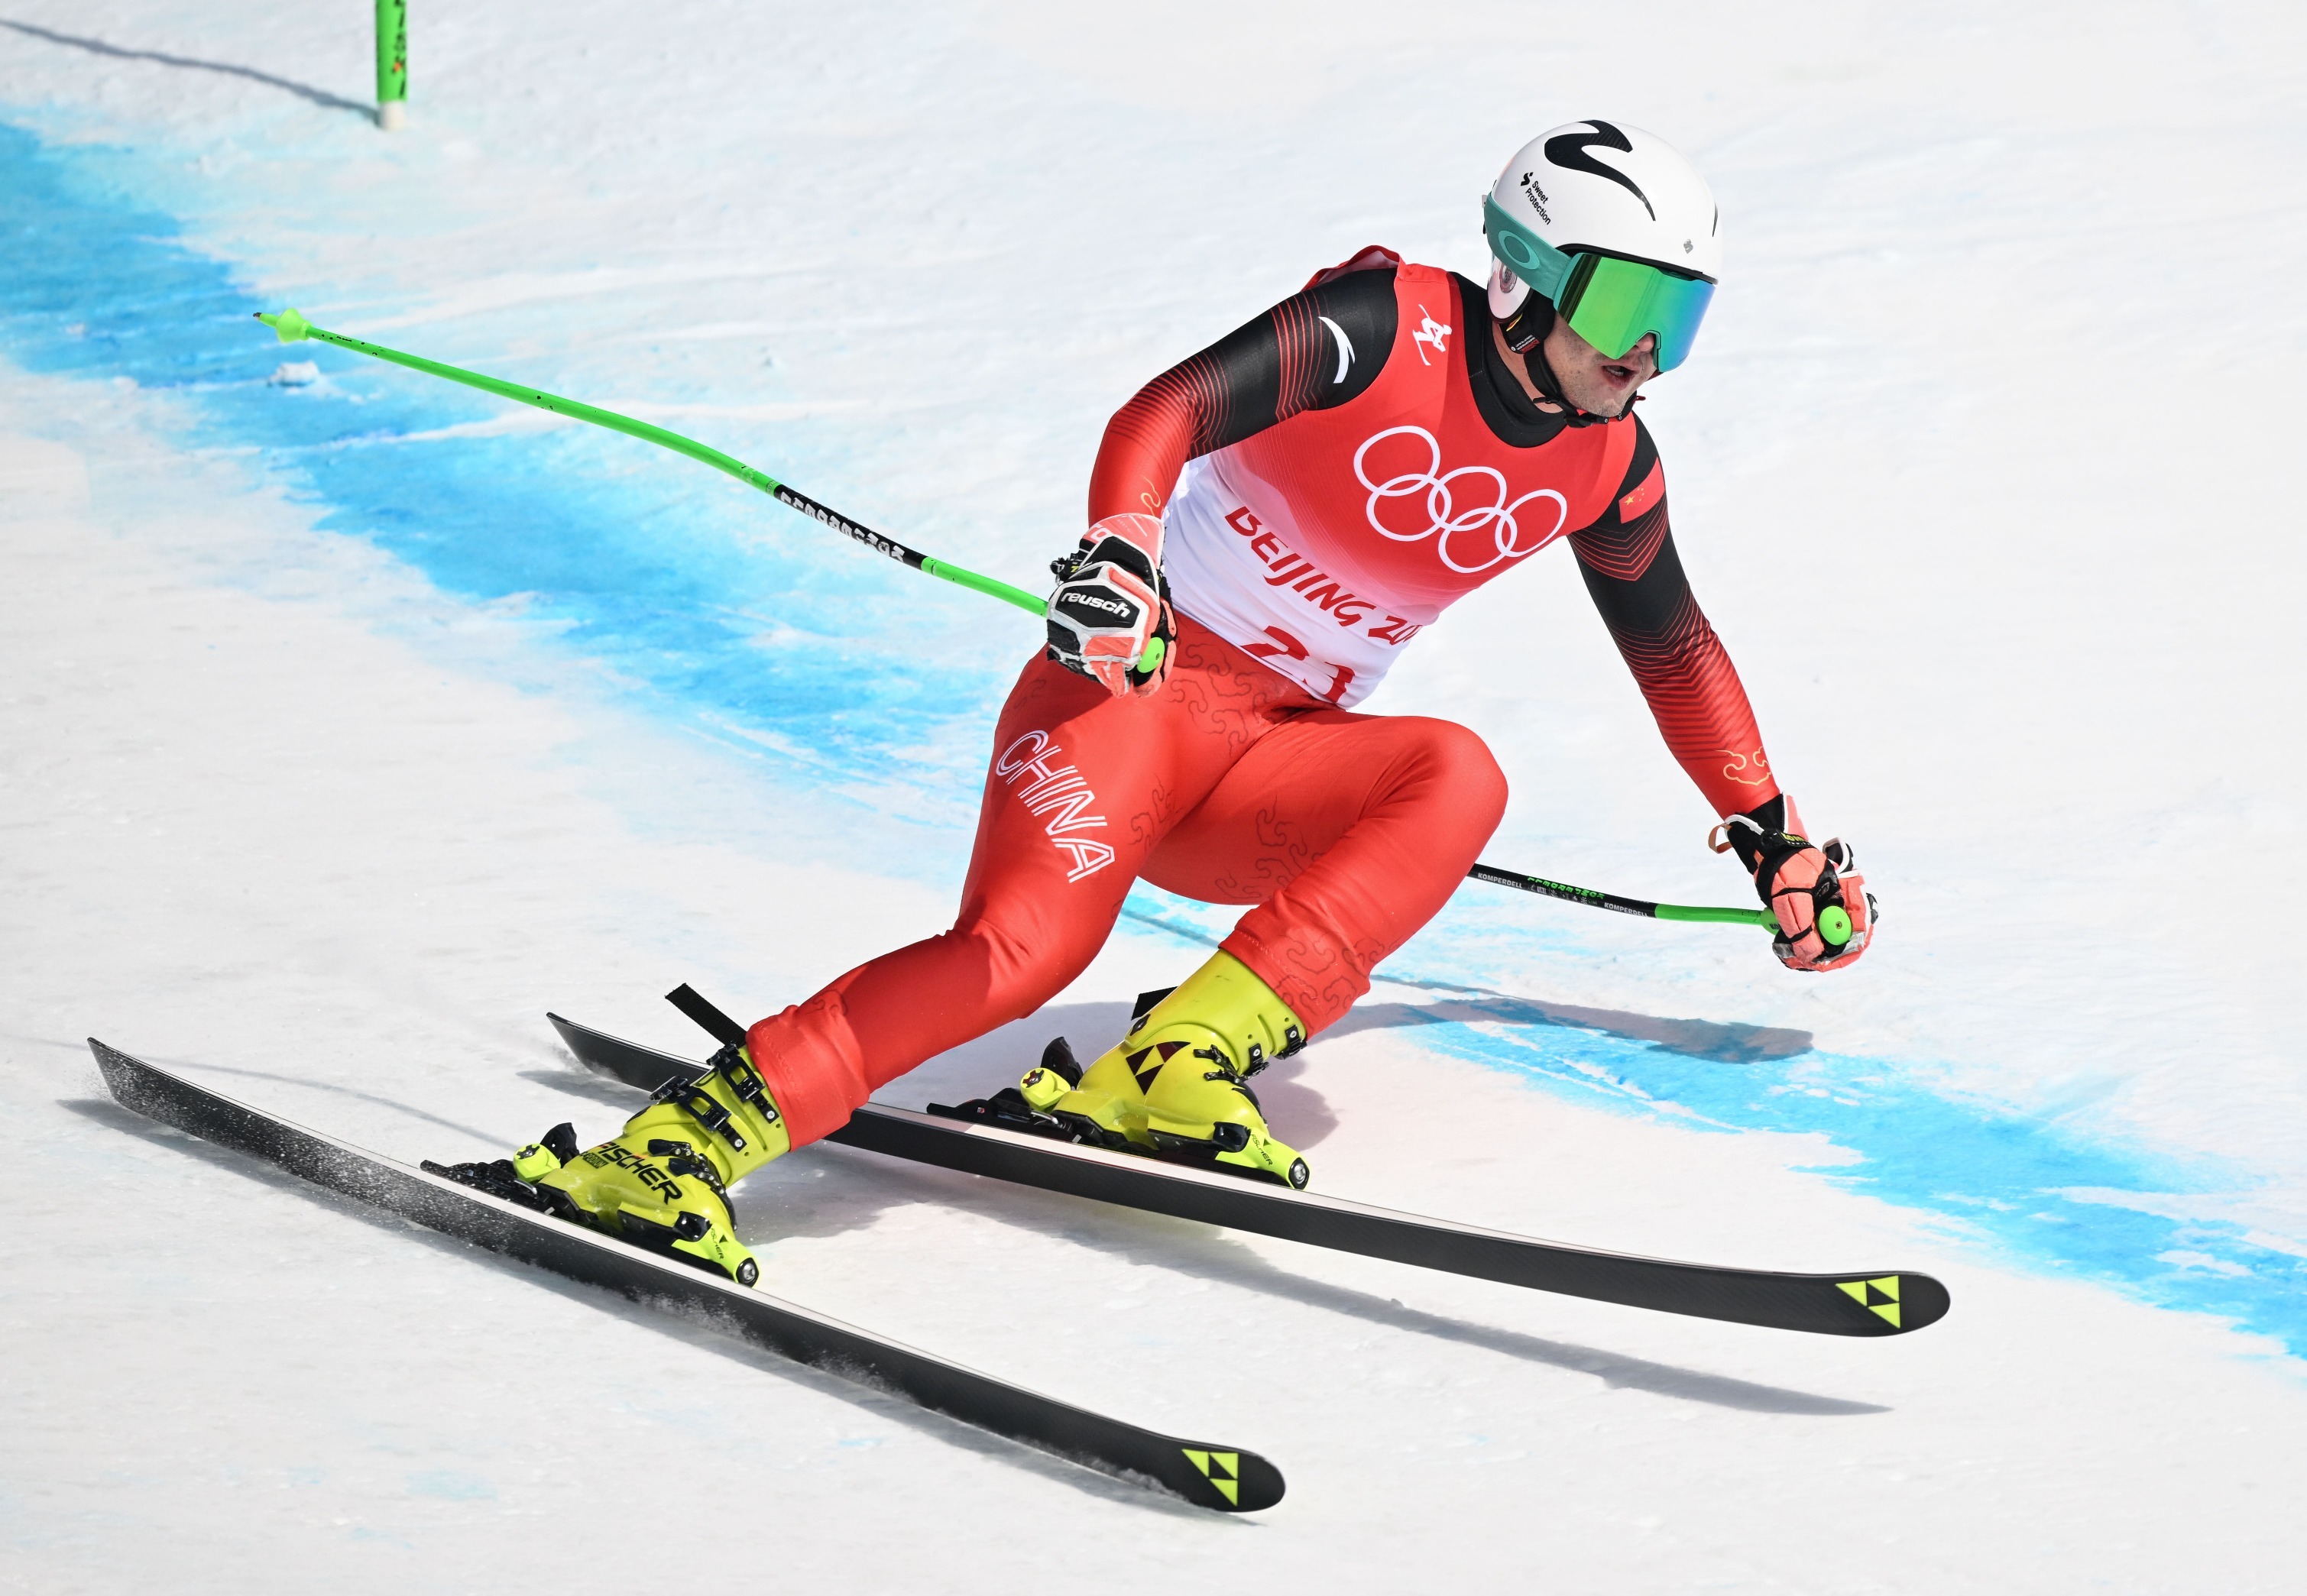 2月10日,北京2022年冬奥会高山滑雪男子全能比赛,中国选手张洋铭在